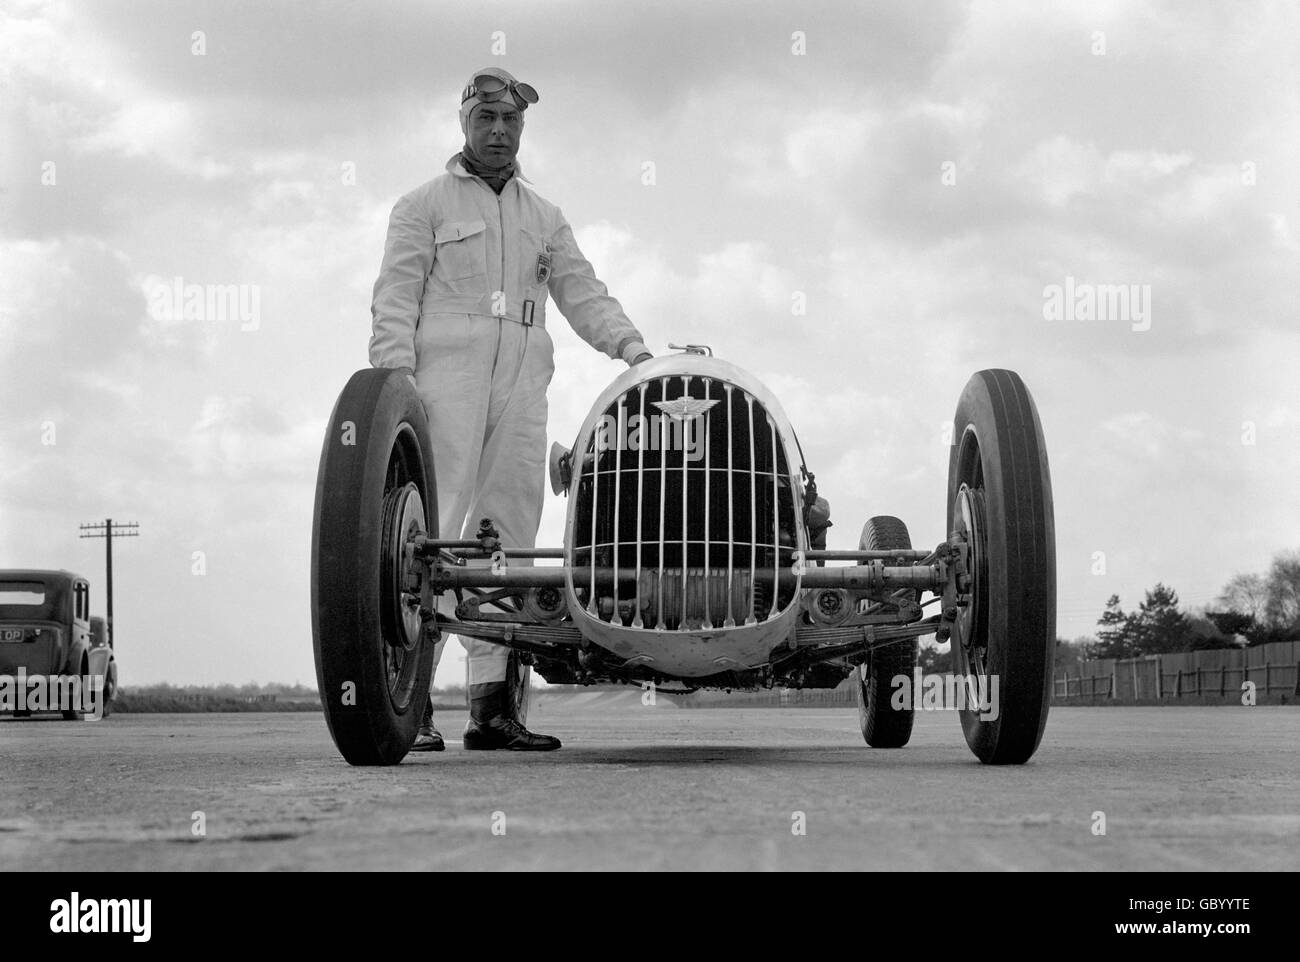 Motor Racing - Austin 1 Mile Record - Brooklands. Pat Driscoll next to his Austin 1 mile record breaker at Brooklands. Stock Photo